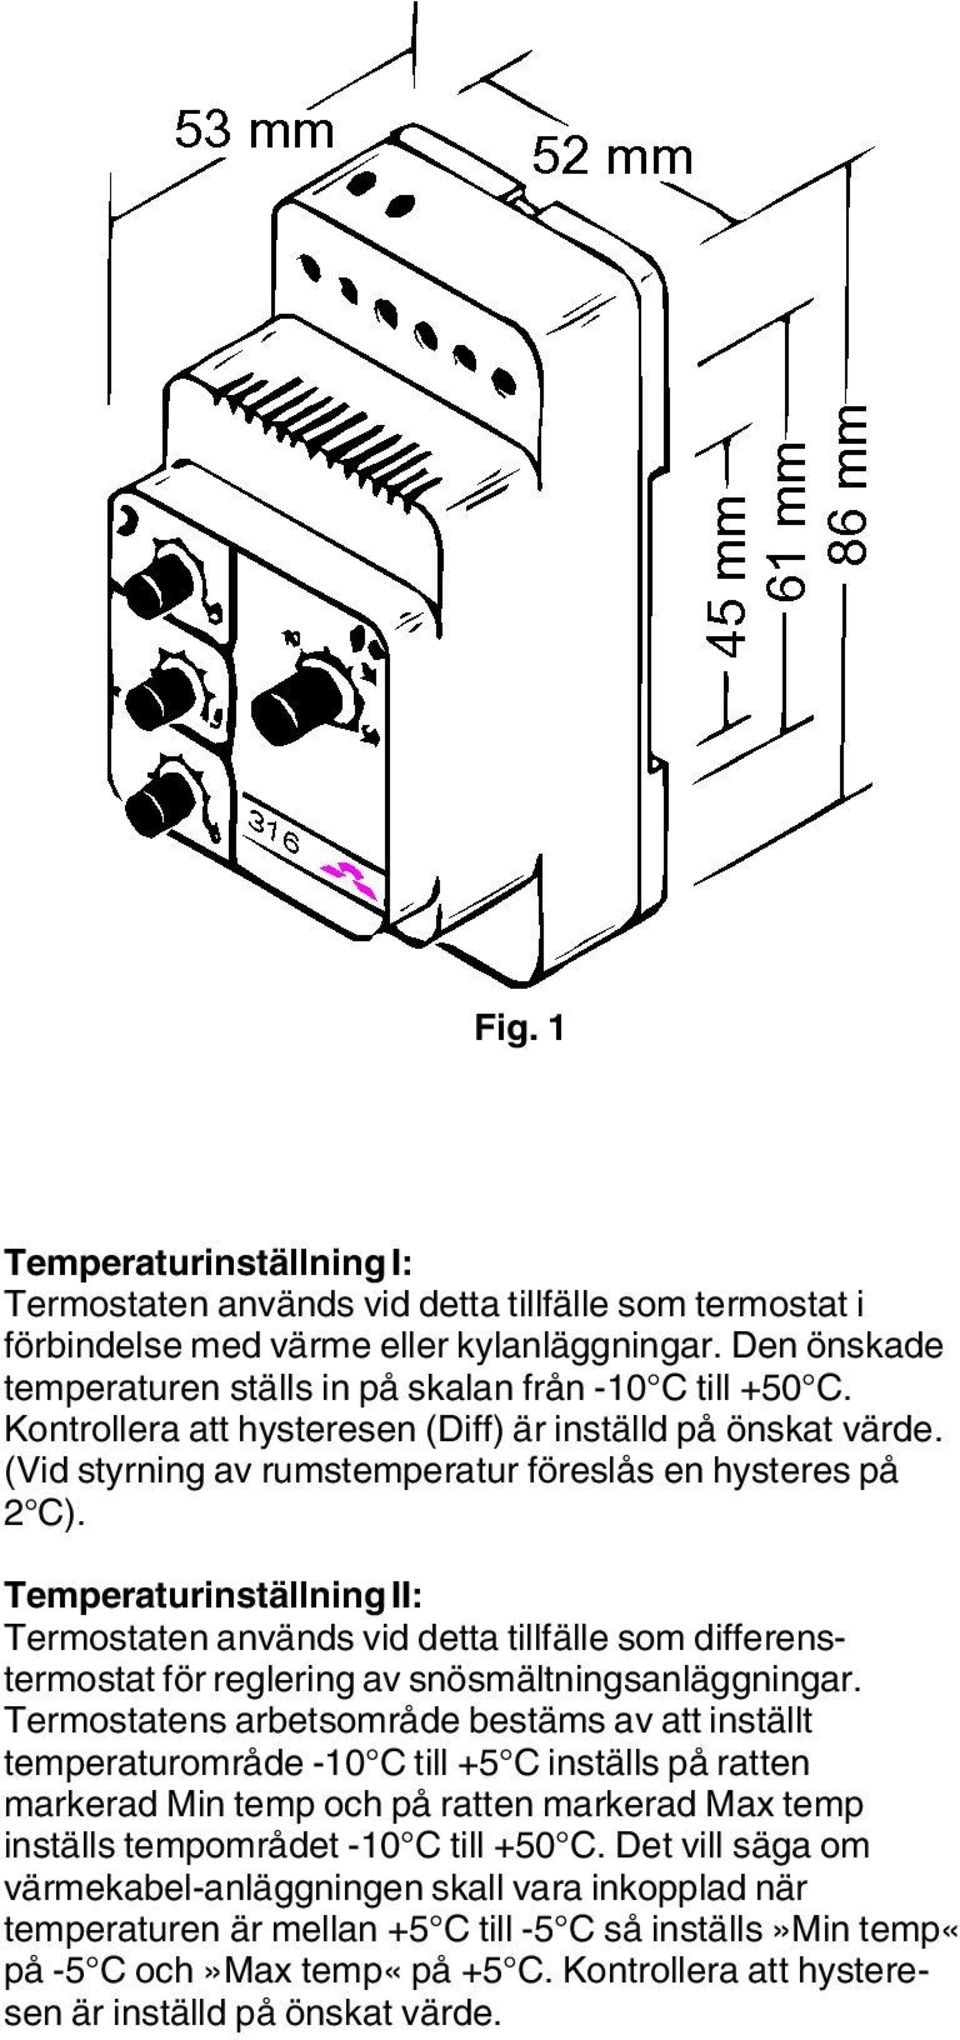 Temperaturinställning II: Termostaten används vid detta tillfälle som differenstermostat för reglering av snösmältningsanläggningar.